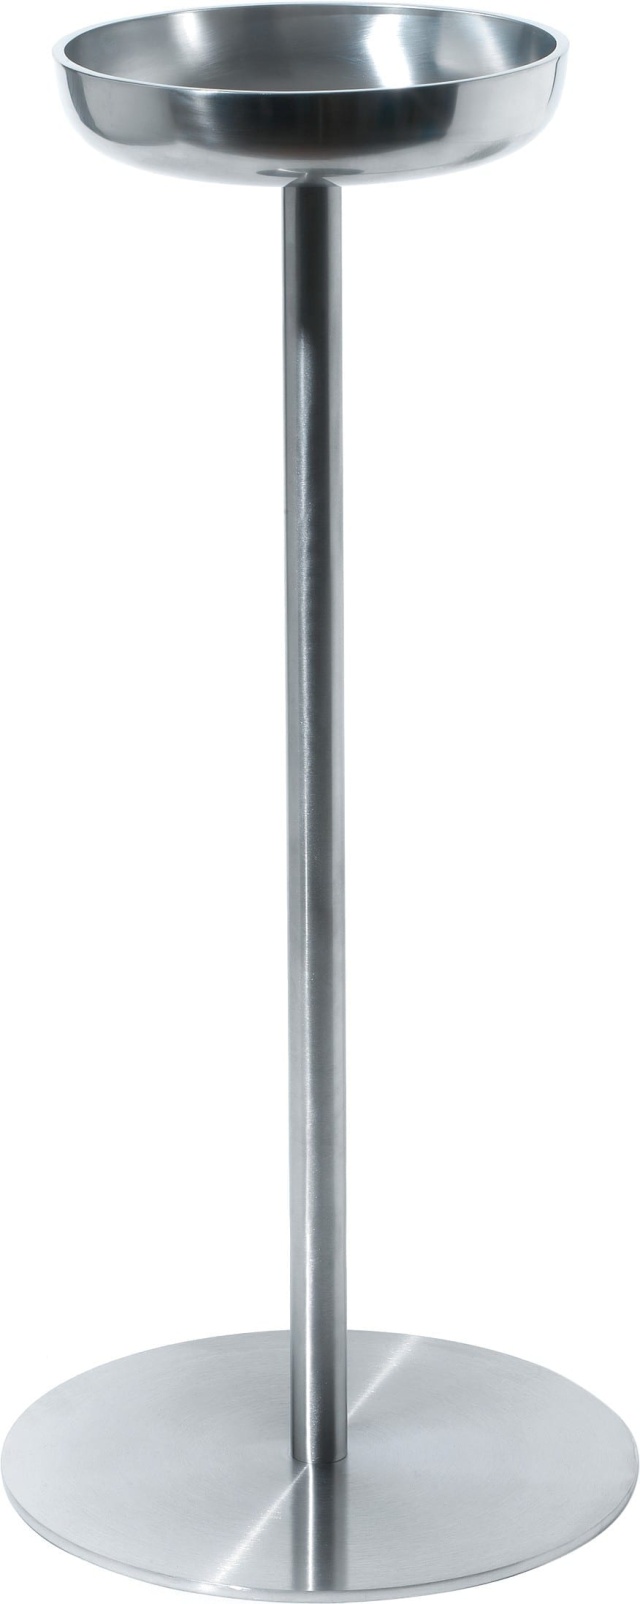 Ställ för vinkylare, Diameter 28 cm - Alessi